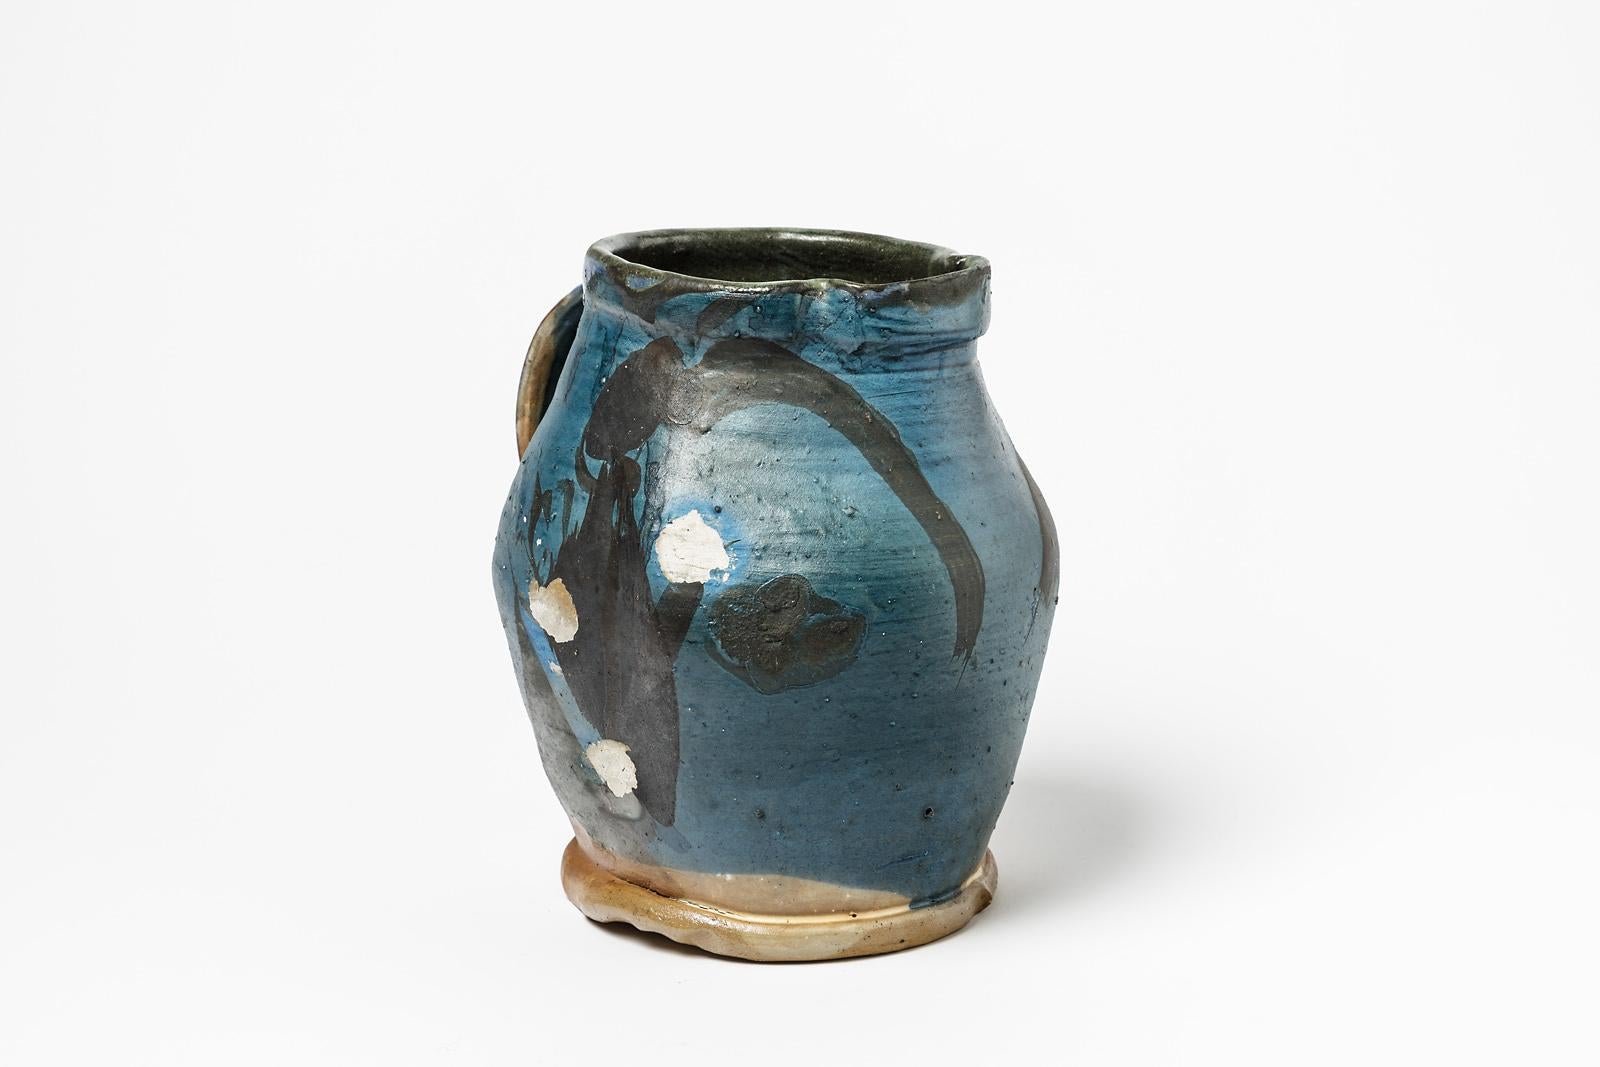 Michel lanos

Pichet ou vase original en céramique abstraite du milieu du siècle dernier

Décoration en glaçure céramique bleue et noire

Condition originale parfaite

Mesures : Hauteur : 21cm, large : 18cm.